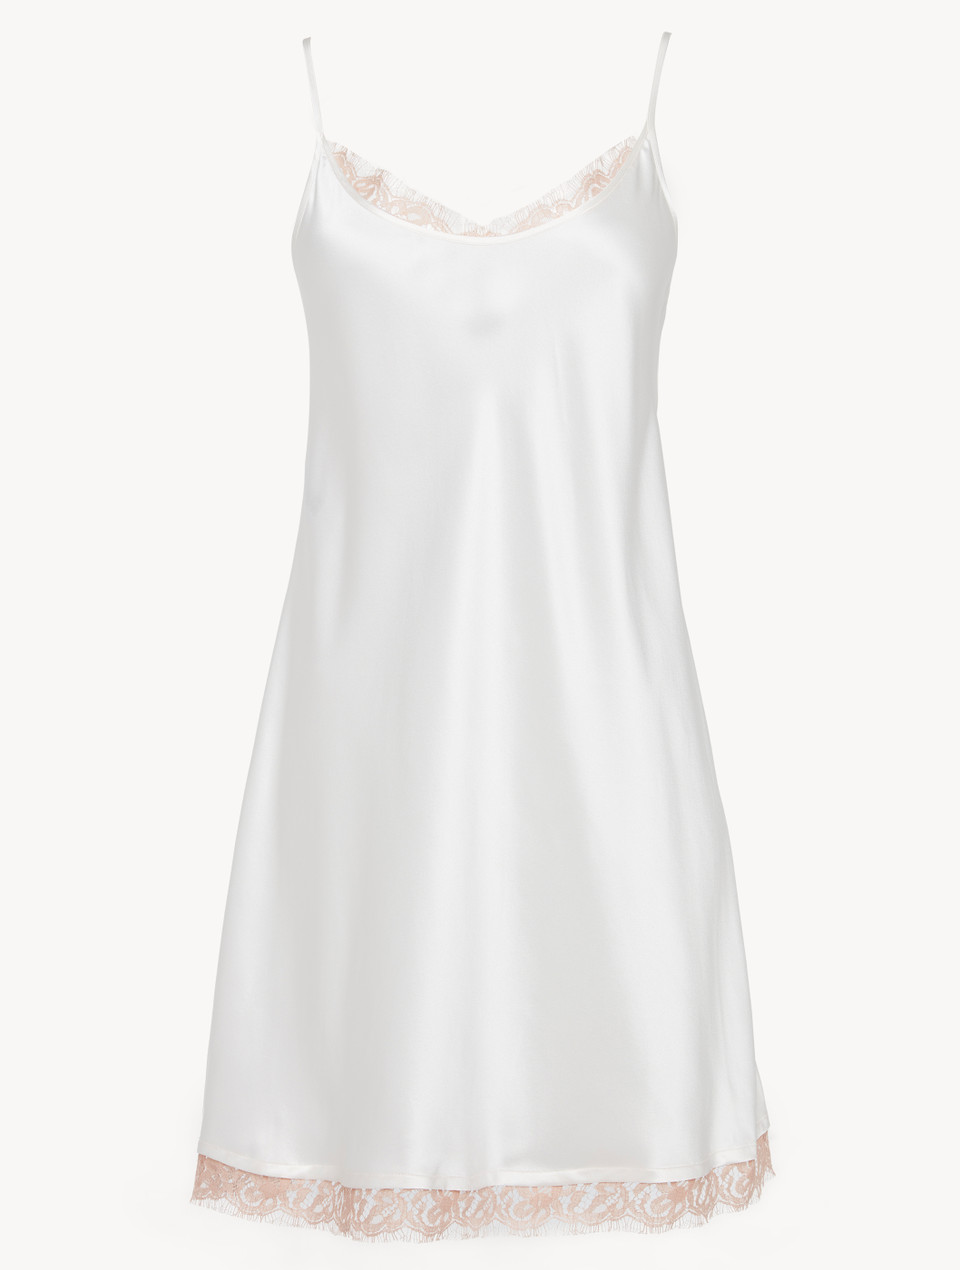 Luxury Lace Triangle Bra in White | La Perla